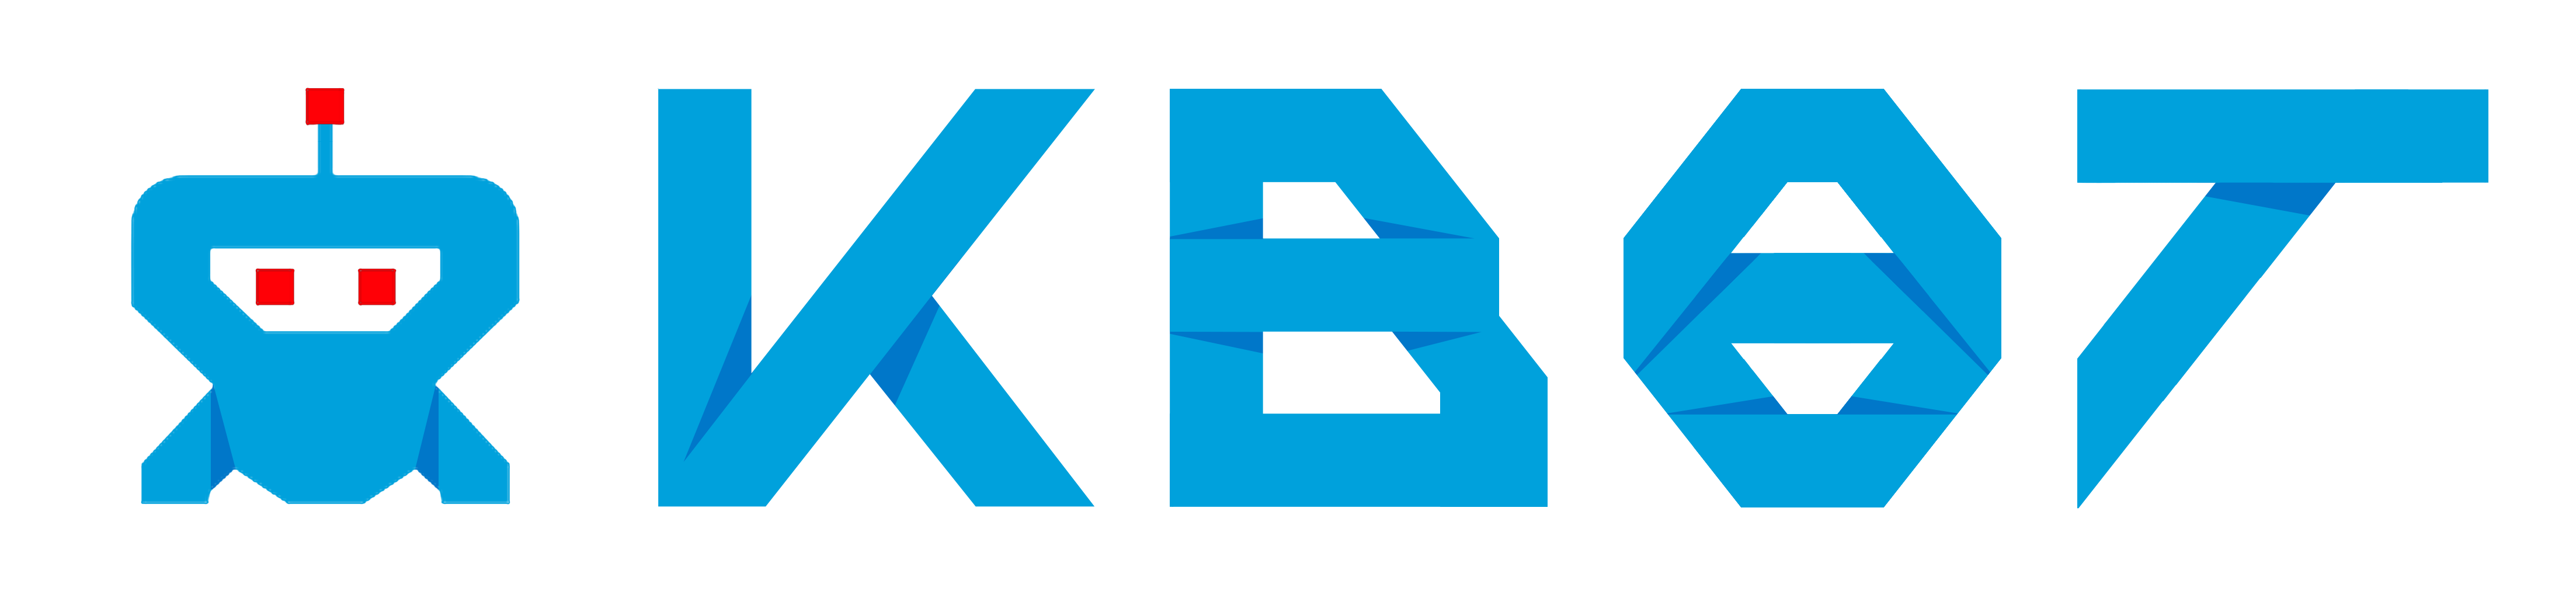 KBot Logo4.png